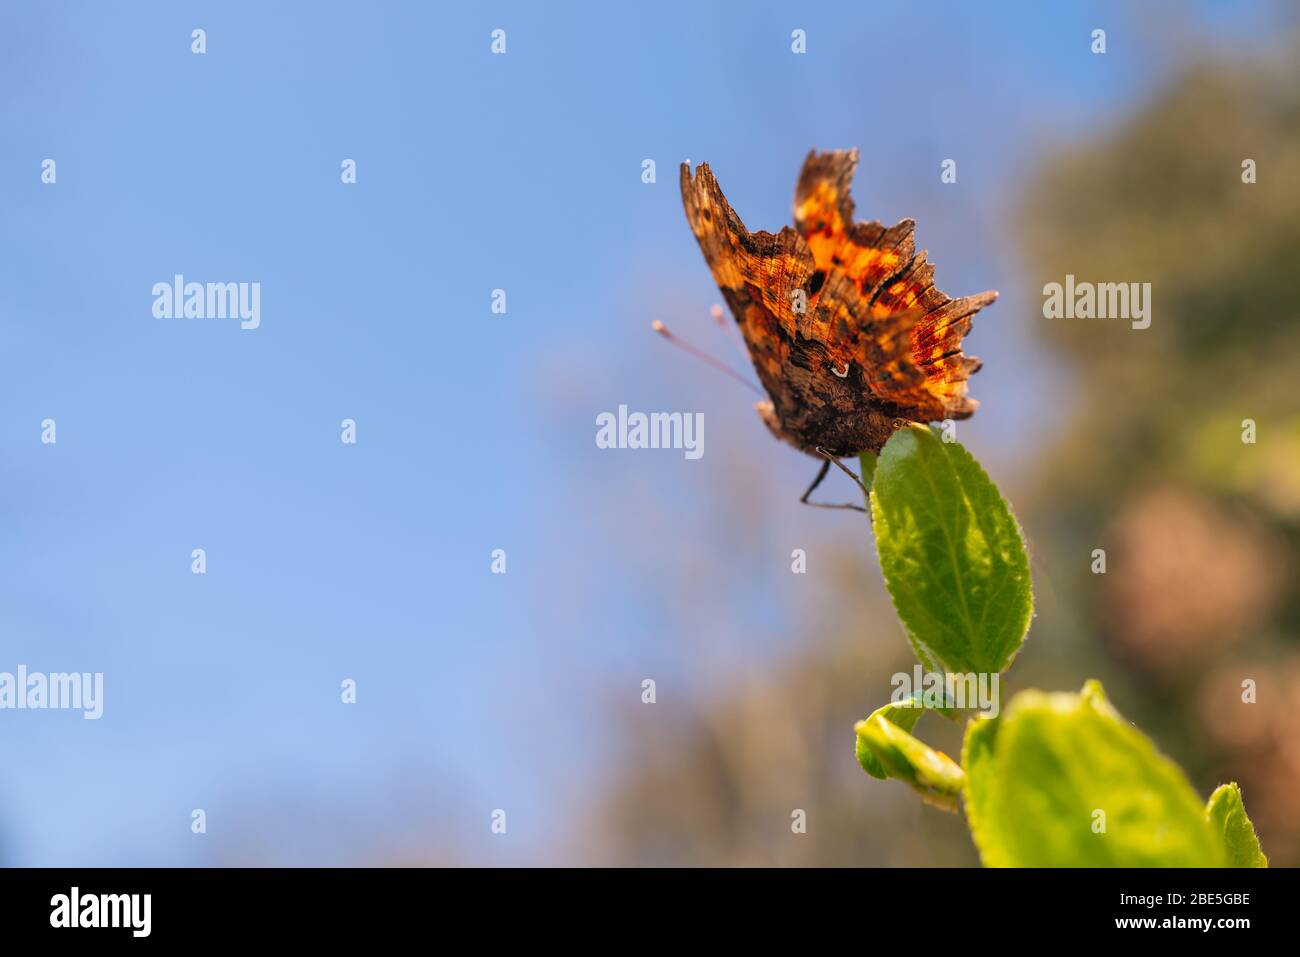 Coma Mariposa sentada en una hoja verde. El diminuto marcado semicircular blanco, distintivo de estas mariposas se puede ver en su ala inferior, Foto de stock